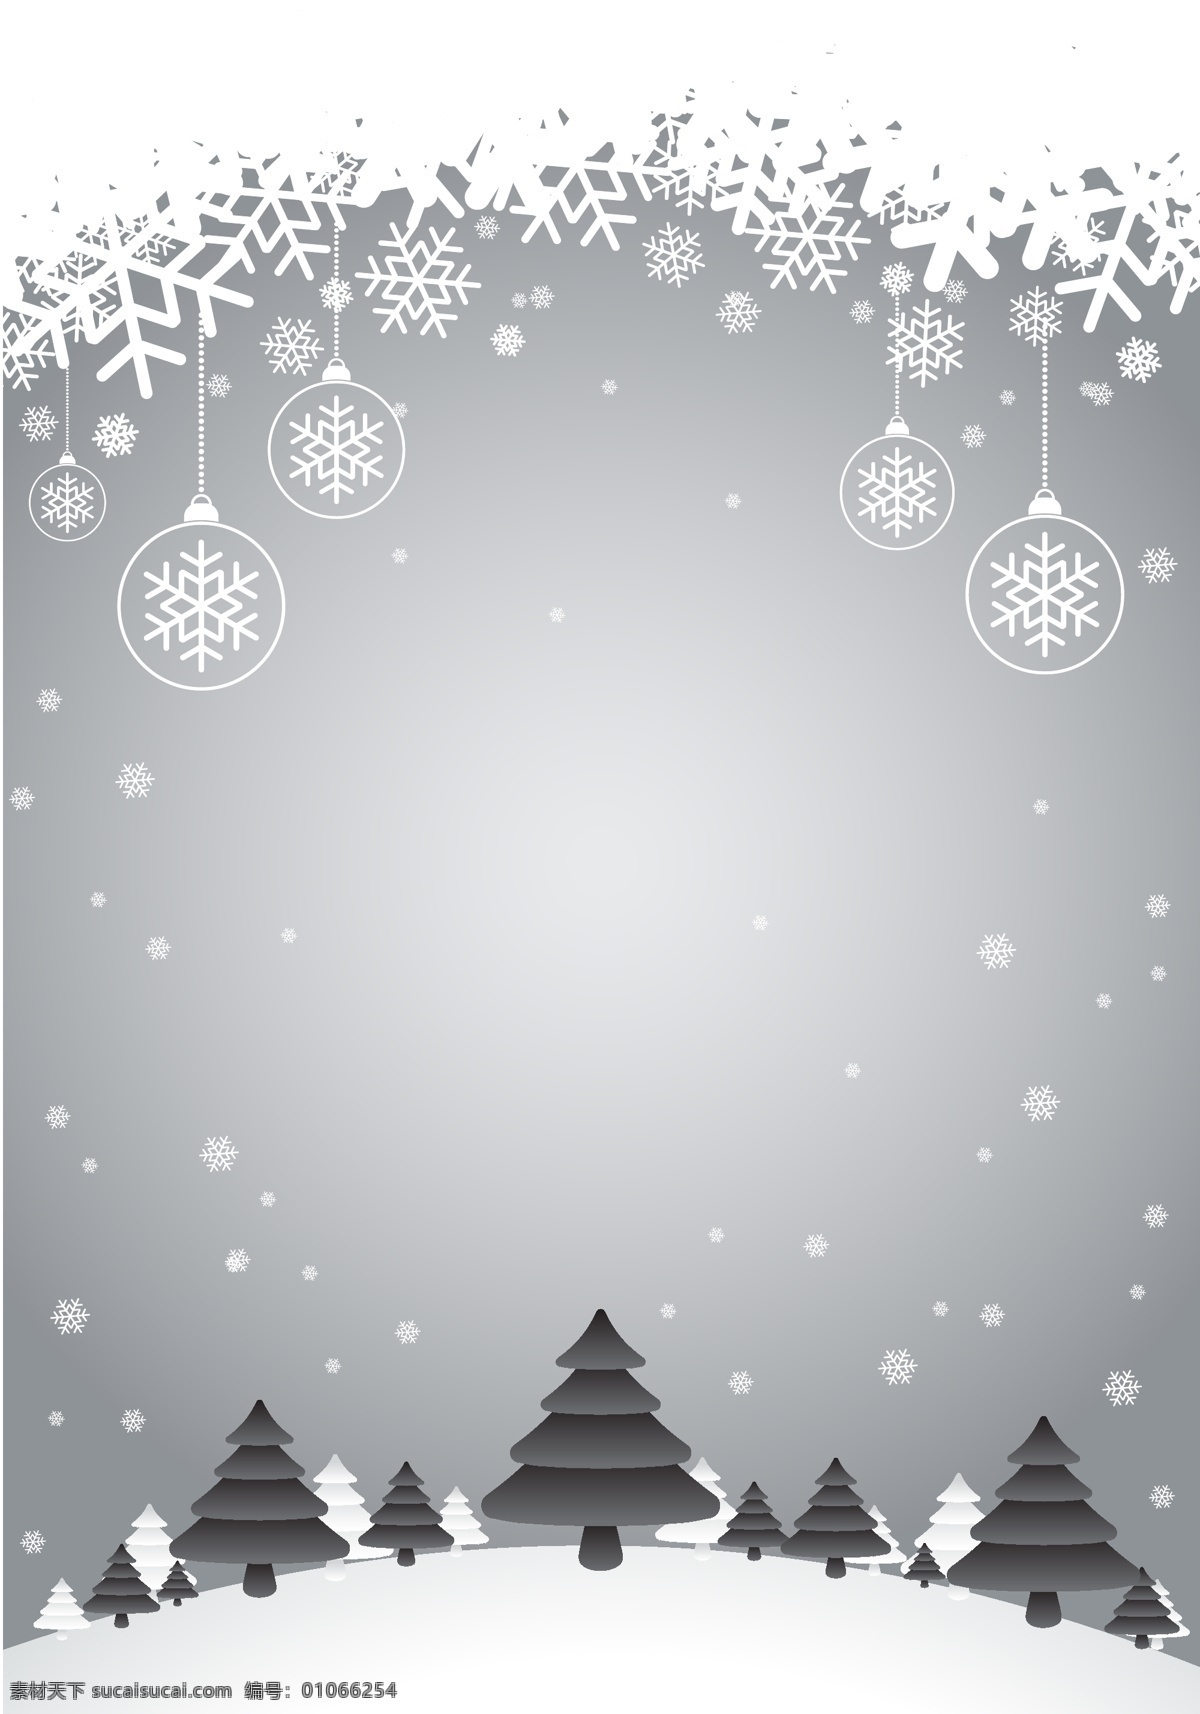 冬天 雪景 广告 背景 雪花 模板 冬日雪景 雪地 树木 松树 下雪 海报 平面 矢量